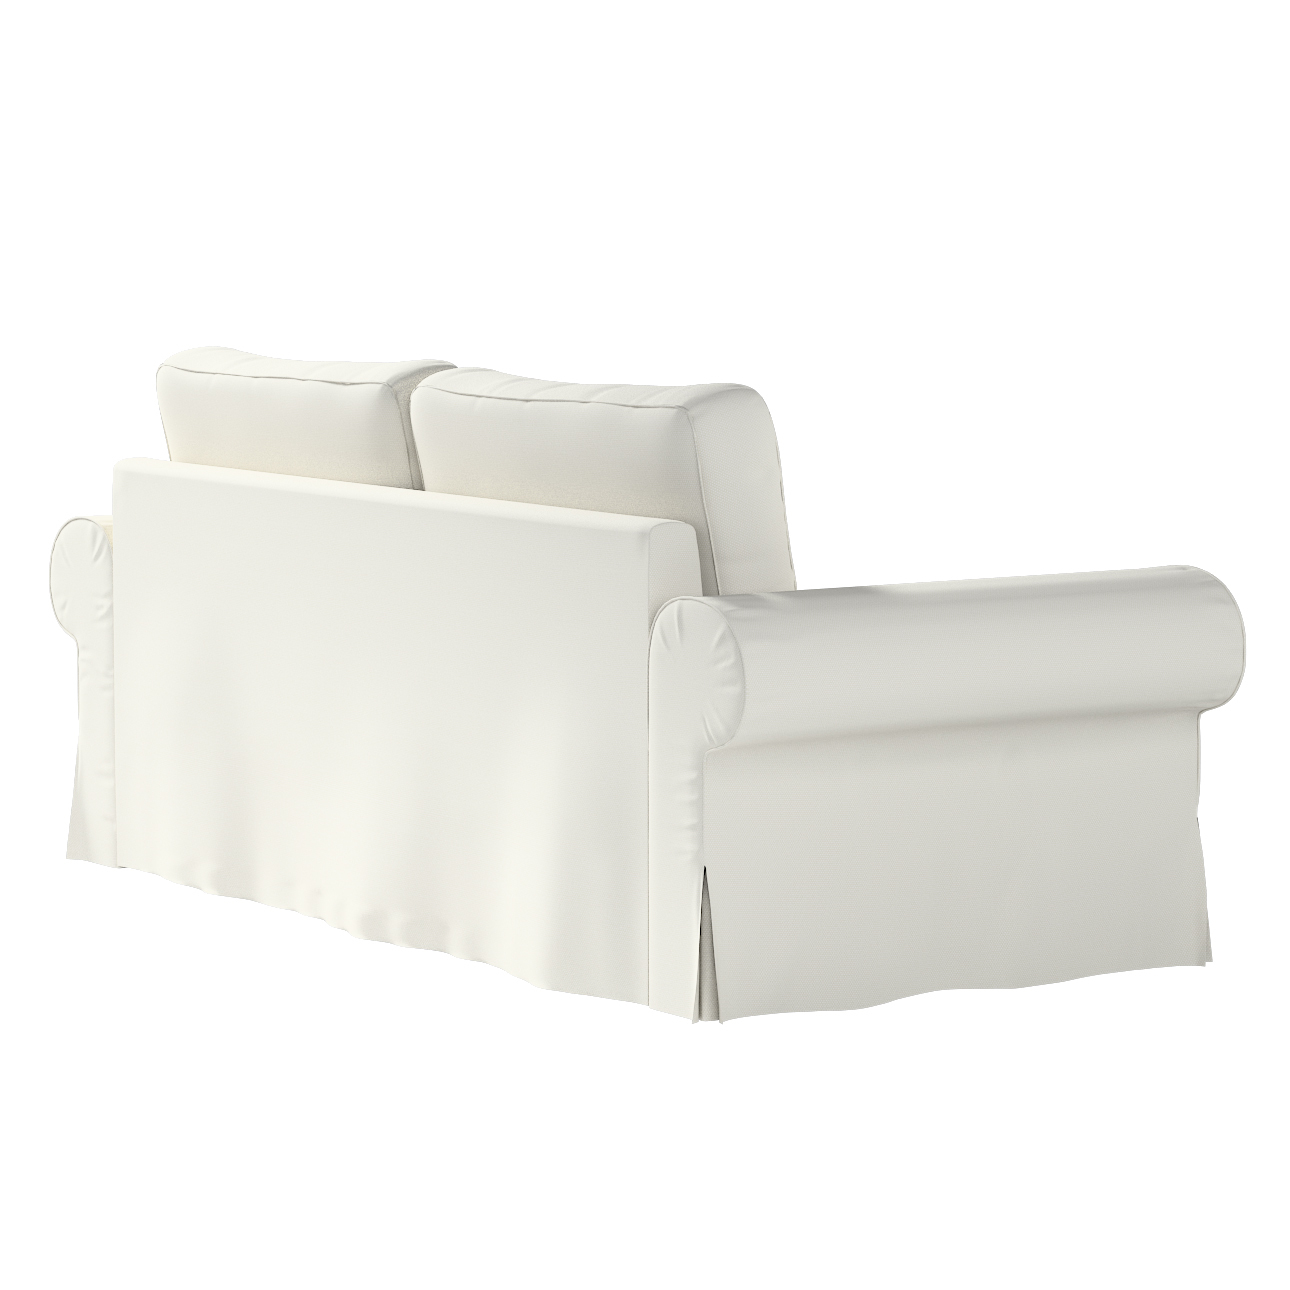 Bezug für Backabro 3-Sitzer Sofa ausklappbar, hellgrau, Bezug für Backabro günstig online kaufen